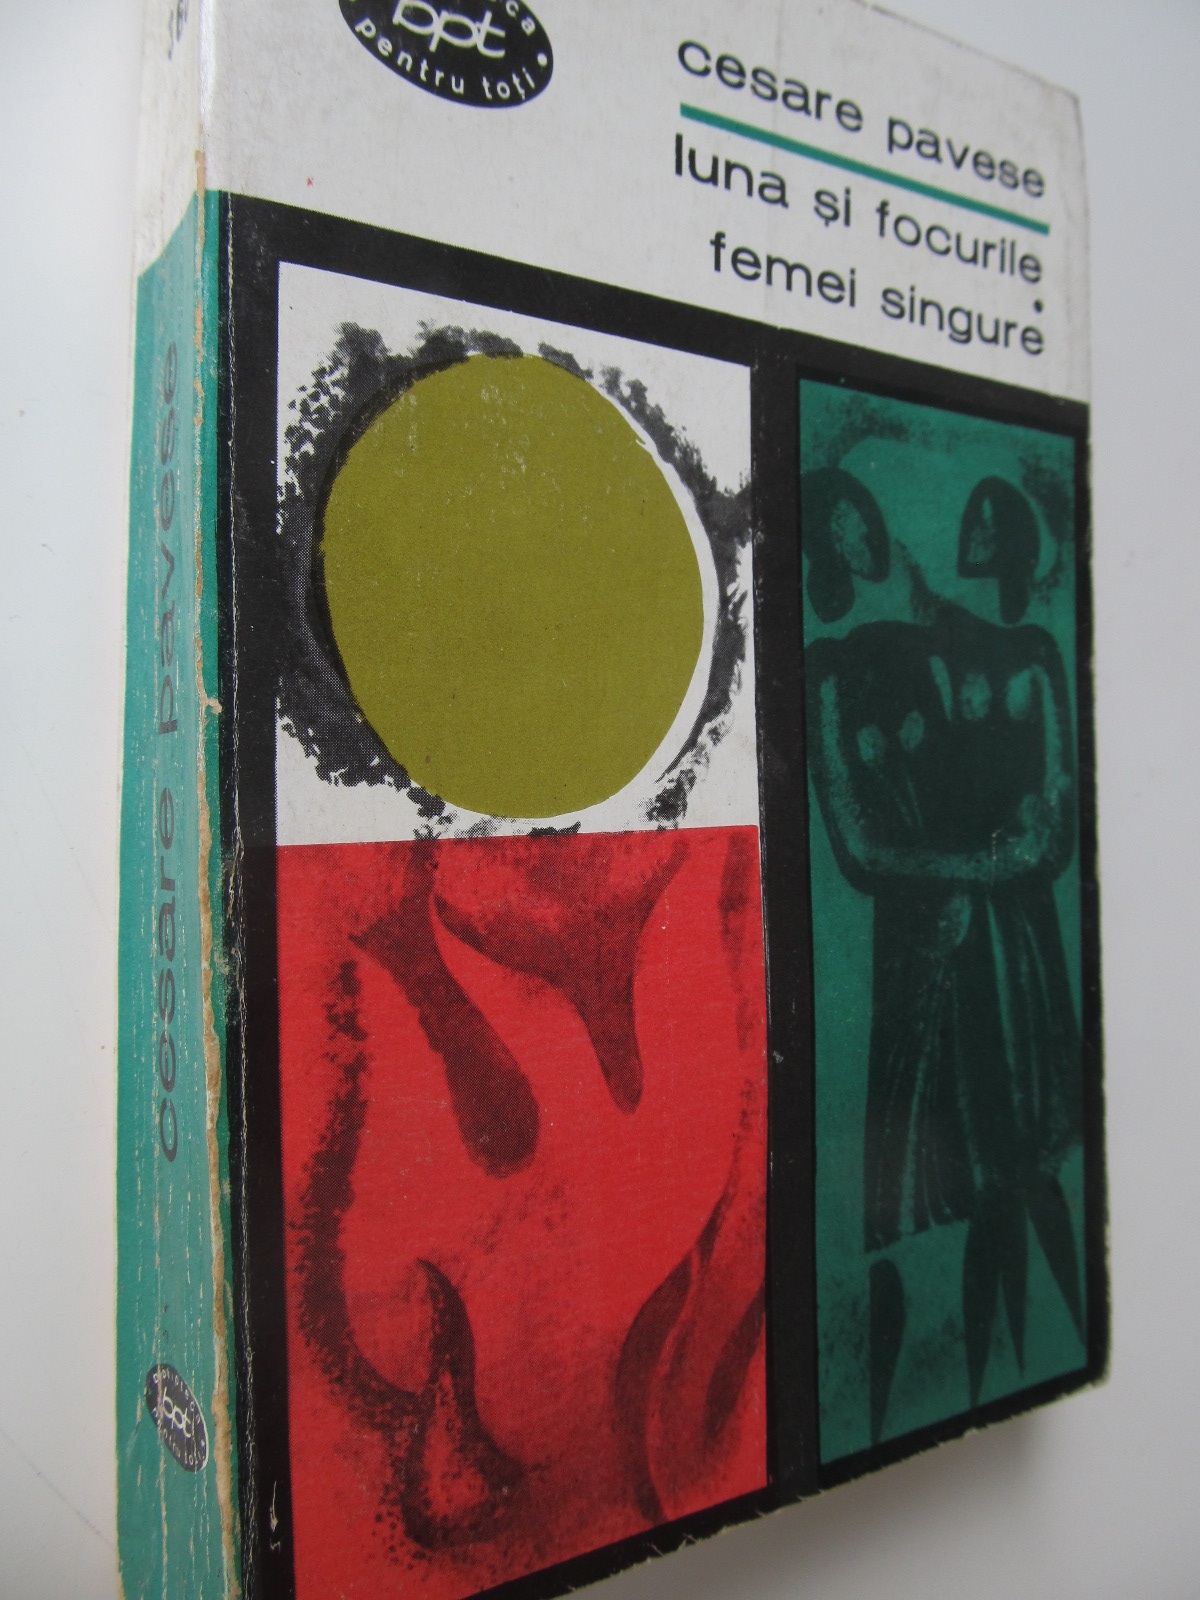 Luna si focurile - Femei singure - Cesare Pavese | Detalii carte